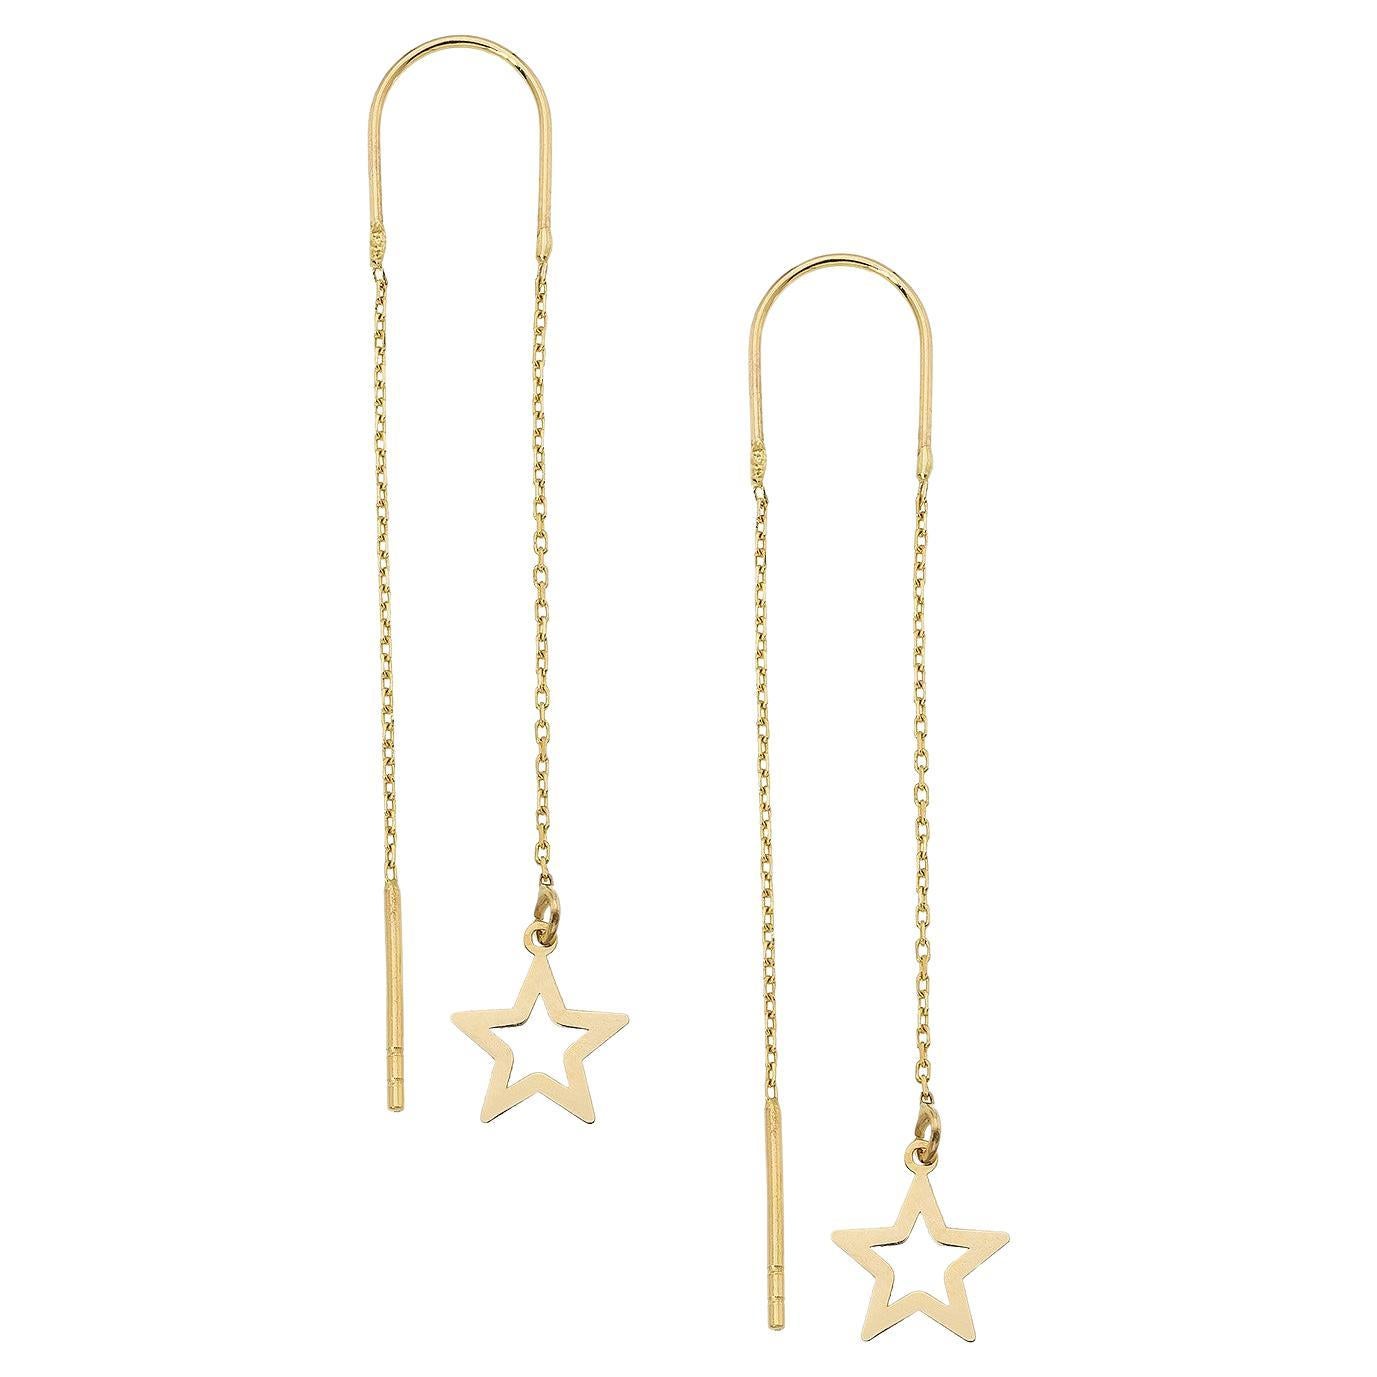 Starburst Threader Earrings in 14k gold.  For Sale